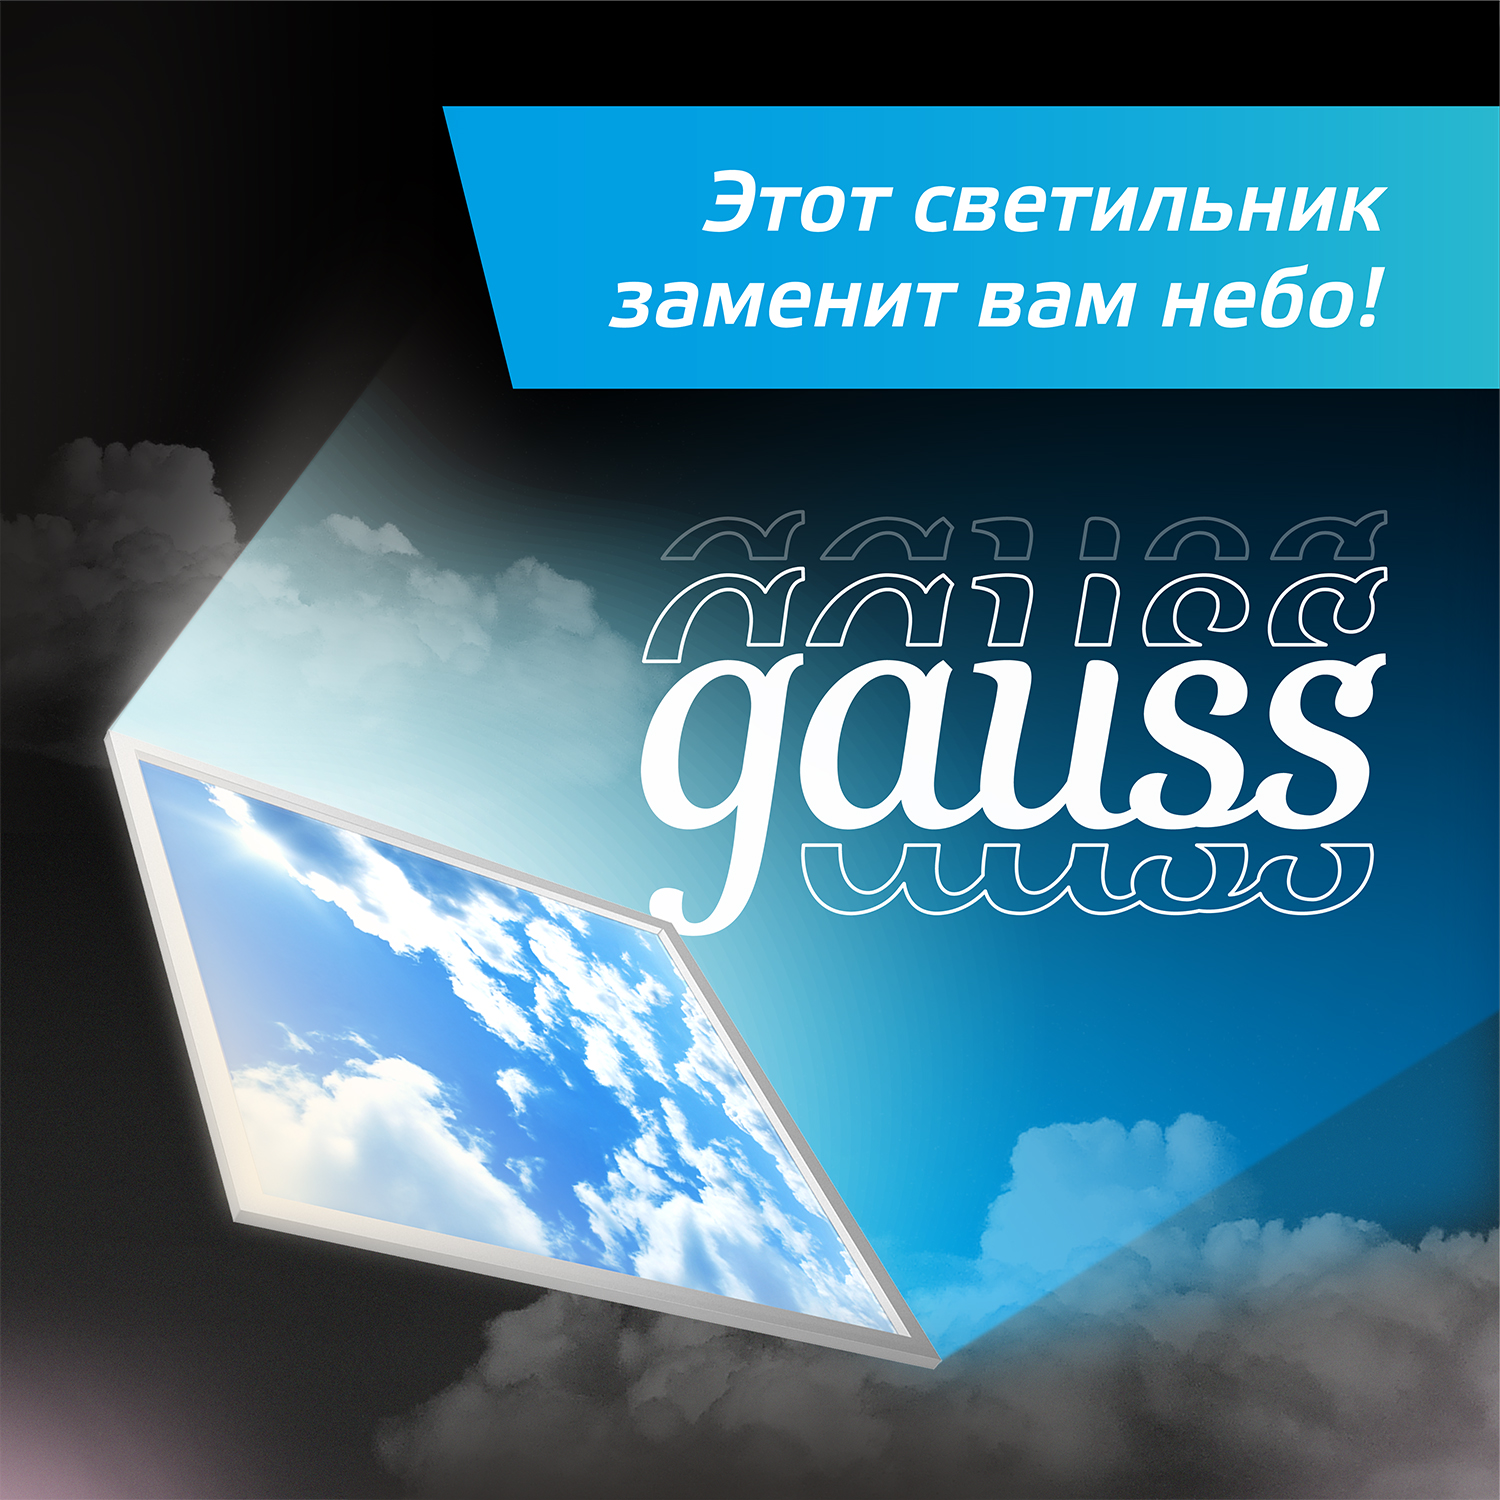 Gauss - энергоэффективная светотехника